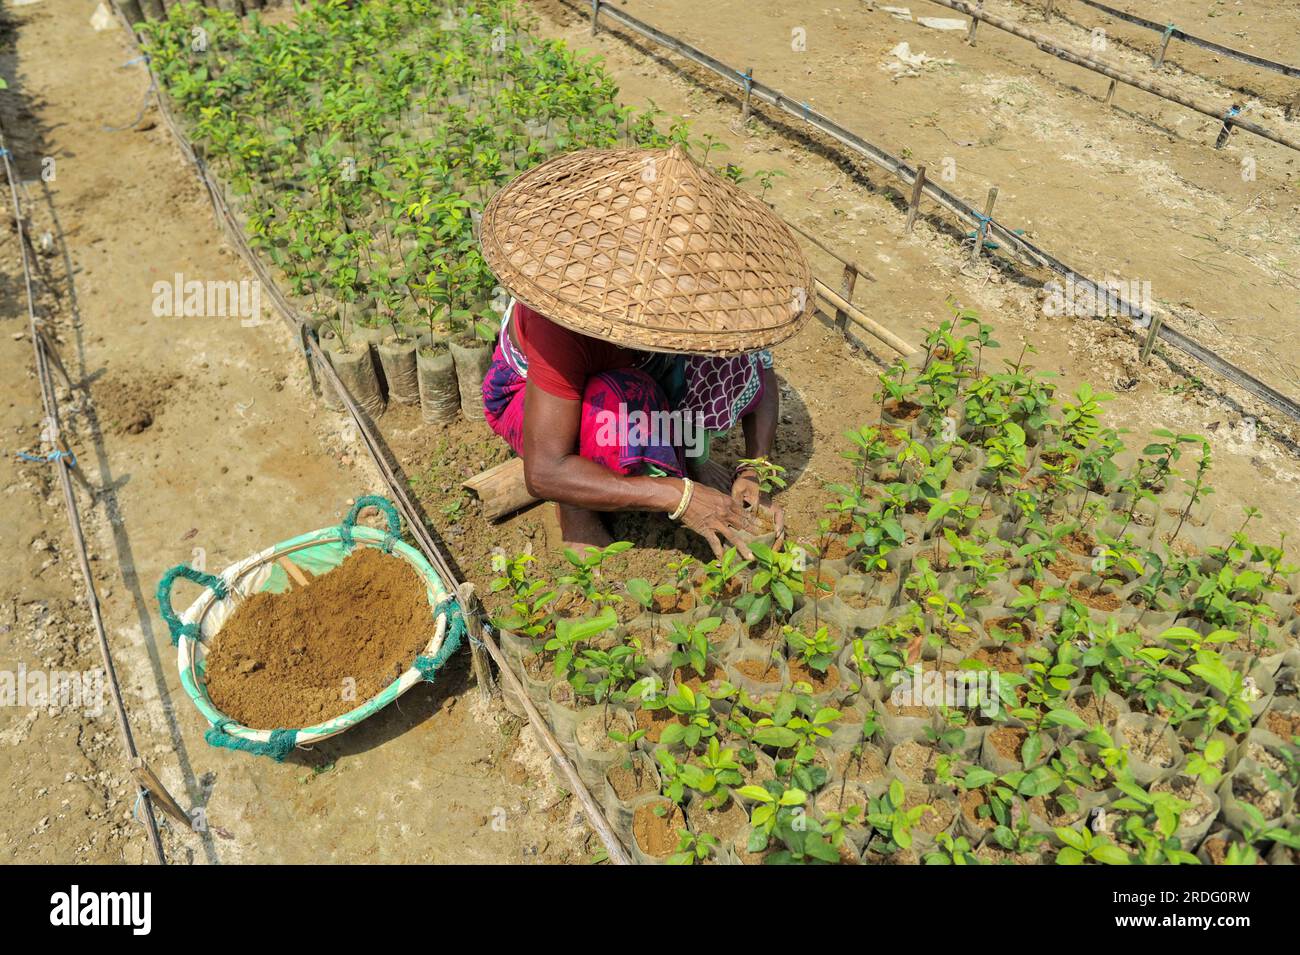 Die Mitarbeiter im Malnicherra Teegarten pflegen mehr als 25 Teepflanzen. Diese Pflanzen würden von Juli bis August säen. Heutzutage erhalten alle Arbeitnehmer 180 TK pro Tag. Sylhet, Bangladesch. Stockfoto